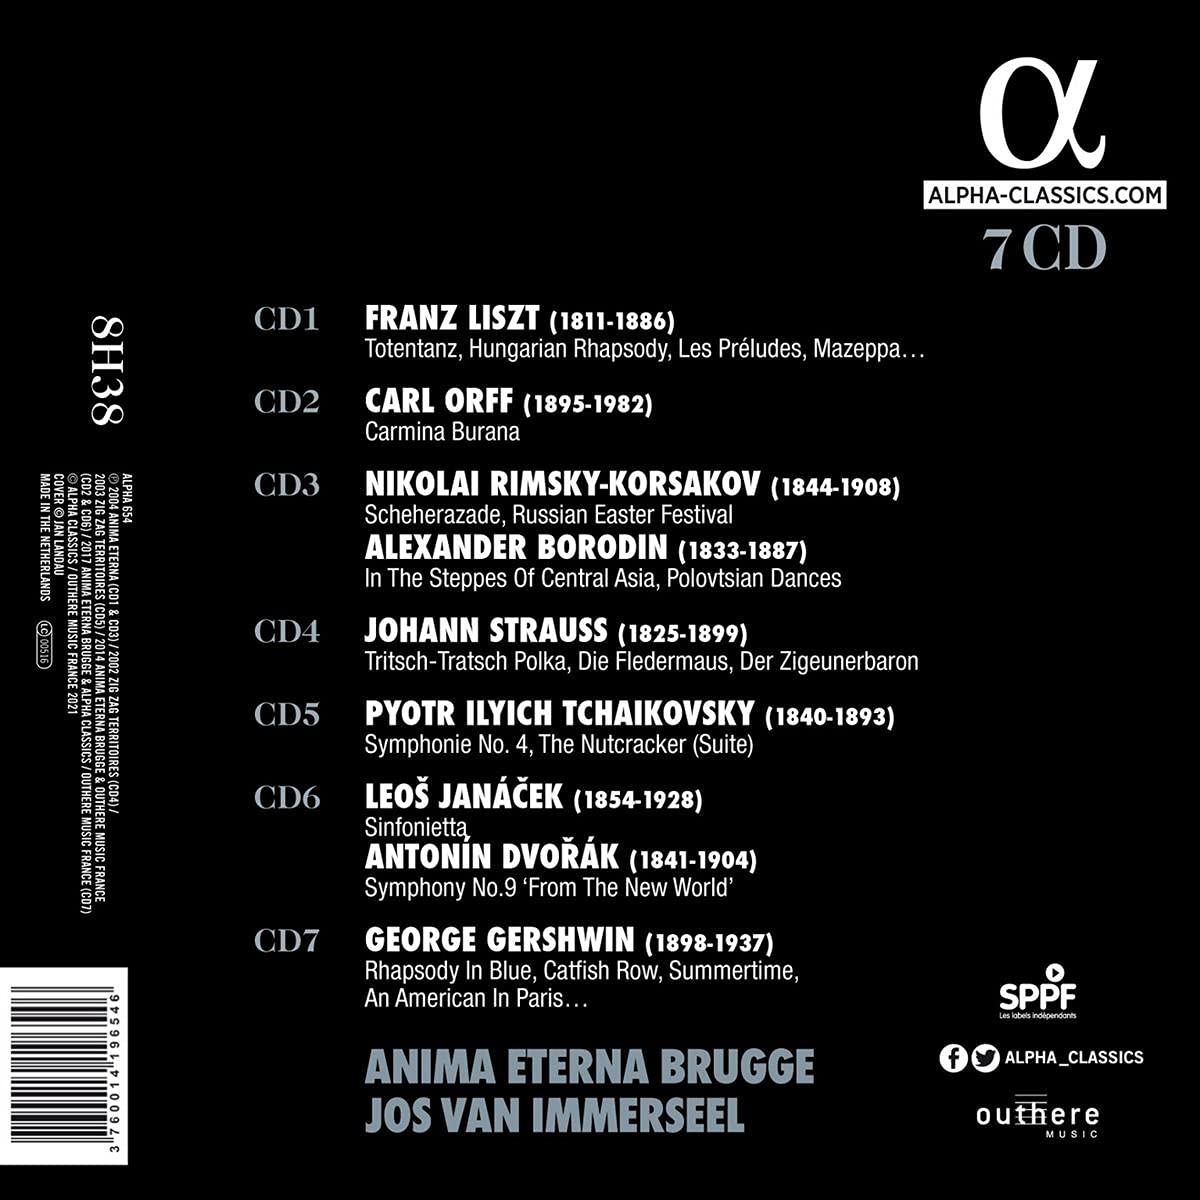 조스 반 이머셀 / 아니마 에테르나 - 관현악 명연 박스 세트: 리스트 / 차이코프스키 / 드보르작 외 (Jos van Immerseel / Anima Eterna - Liszt / Tchaikovsky / Dvorak)